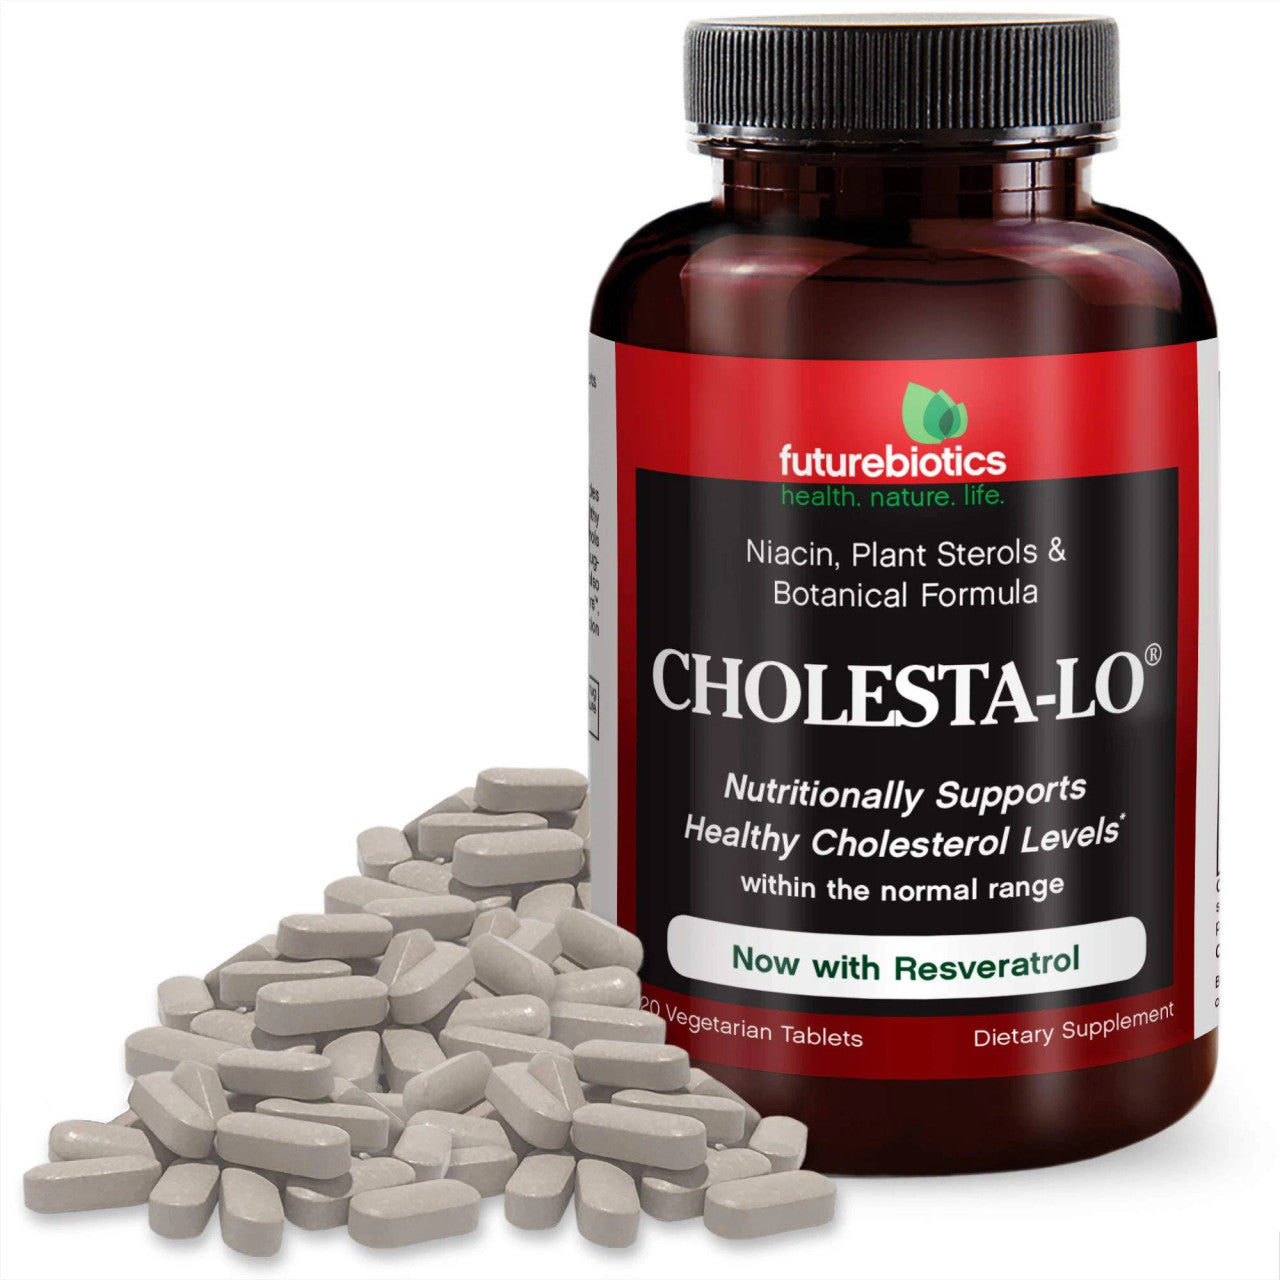 Futurebiotics Cholesta-Lo with vitamins